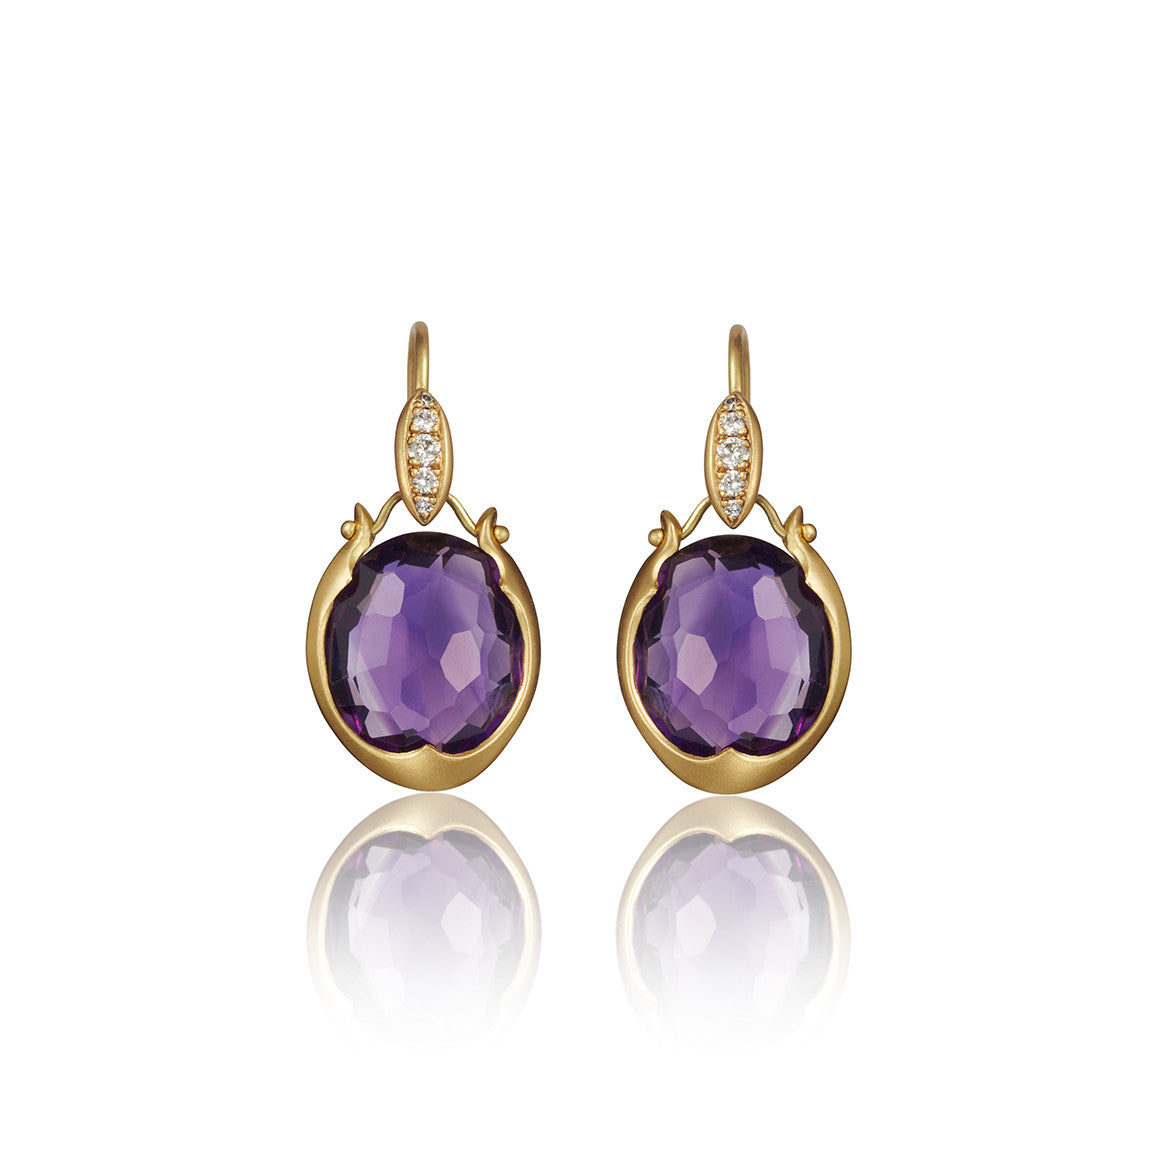 Lovebird Oval Drop Earrings with Purple Amethyst